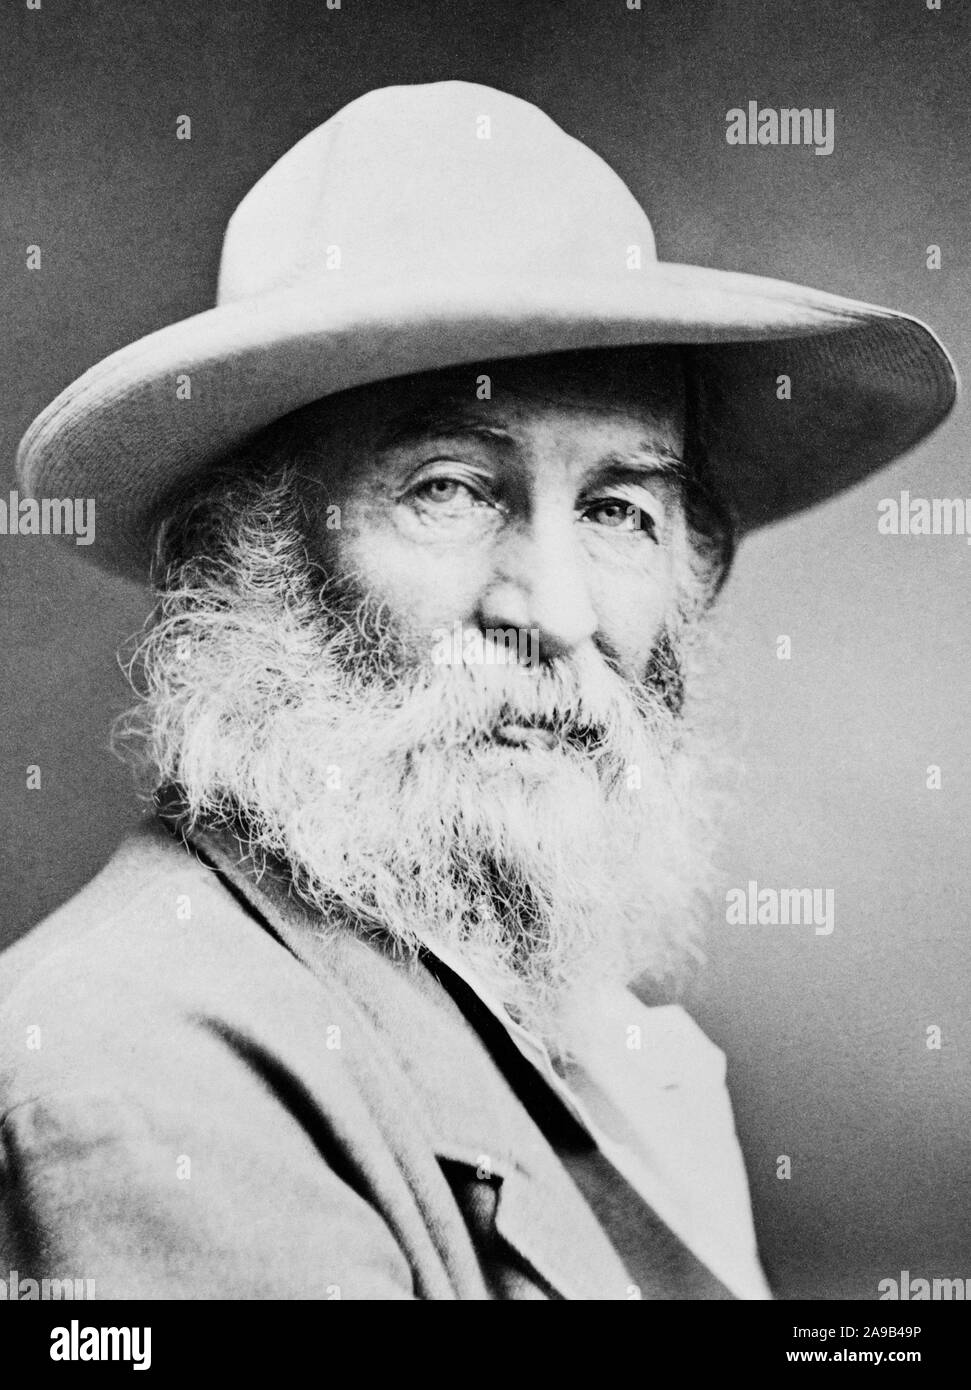 Vintage photo portrait de poète, essayiste et journaliste Walt Whitman (1819 - 1892). Photo vers 1870. Banque D'Images